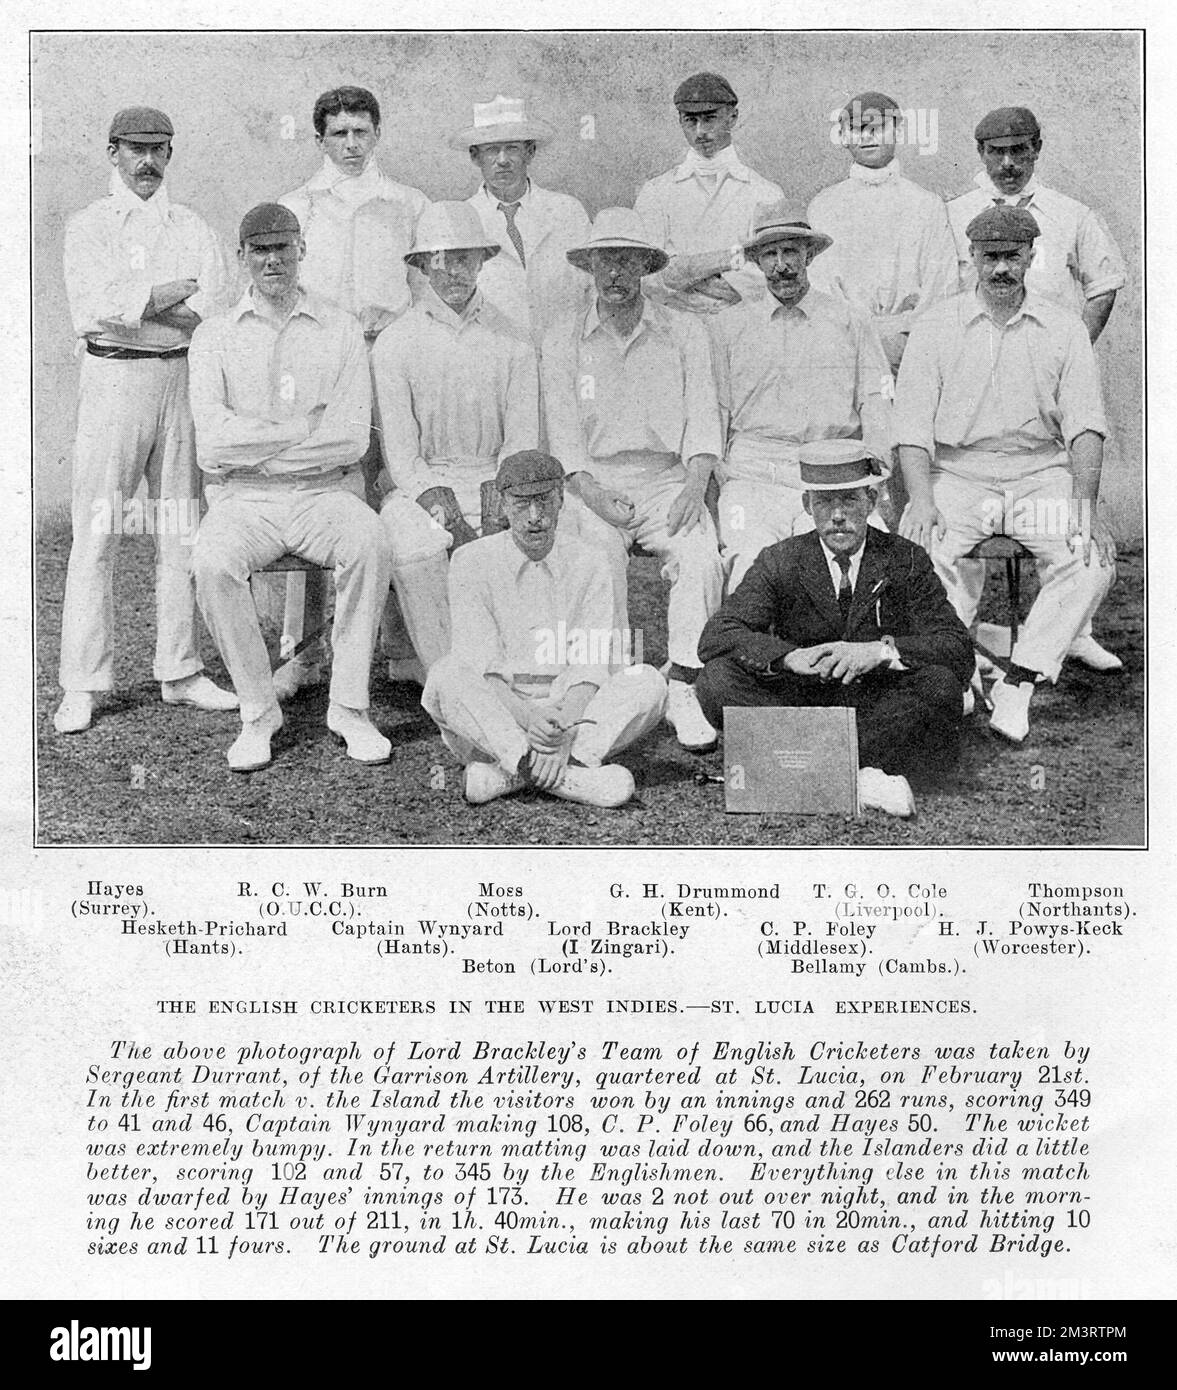 El equipo de jugadores de críquet ingleses de Lord Brackley en las Indias Occidentales. Fecha: 1905 Foto de stock